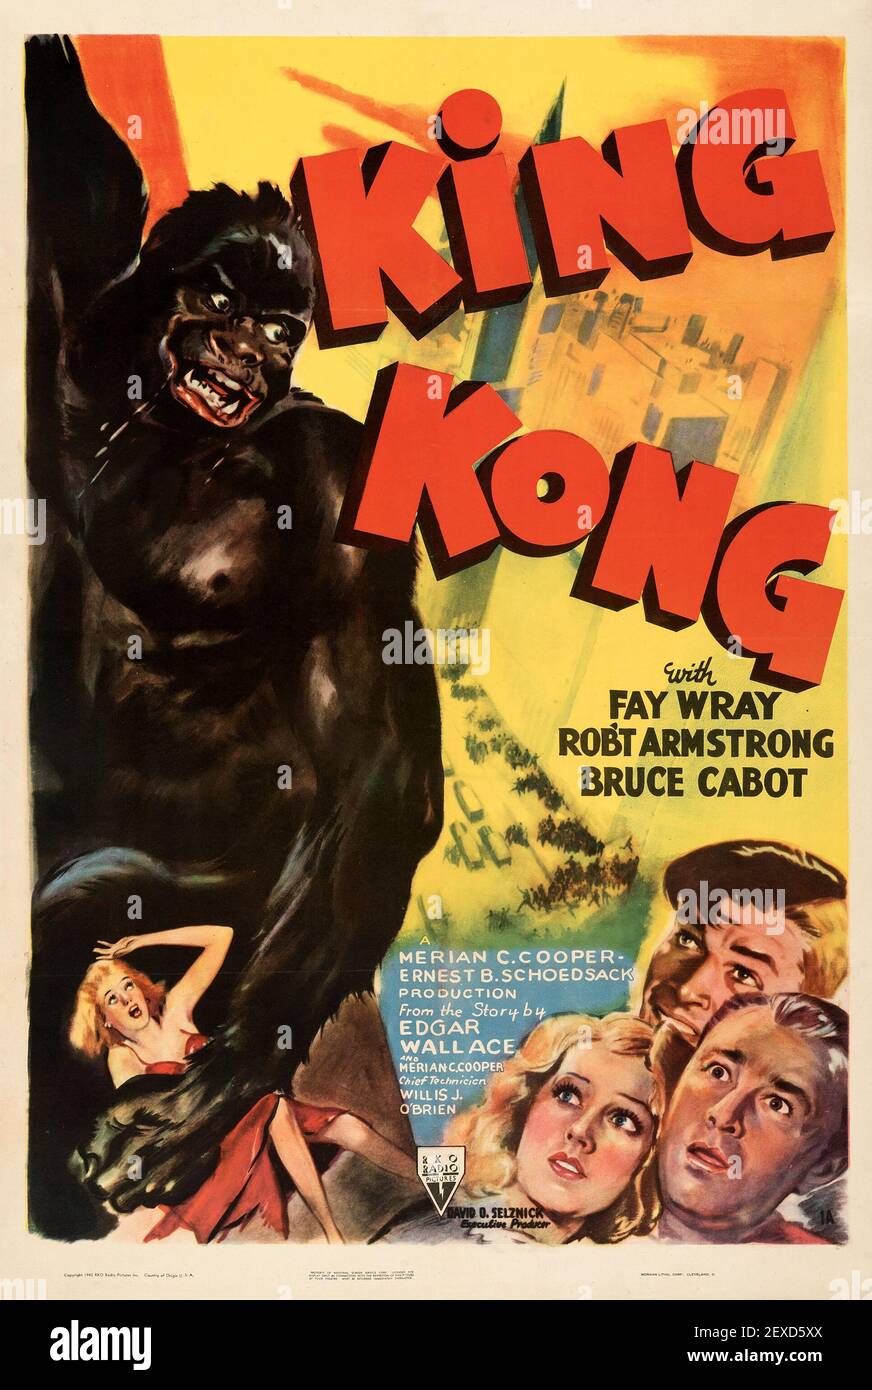 Affiche King Kong 1933. Fay Wray, Robert Armstrong et Bruce Cabot. Affiche / image de film d'horreur ancienne et vintage. Banque D'Images